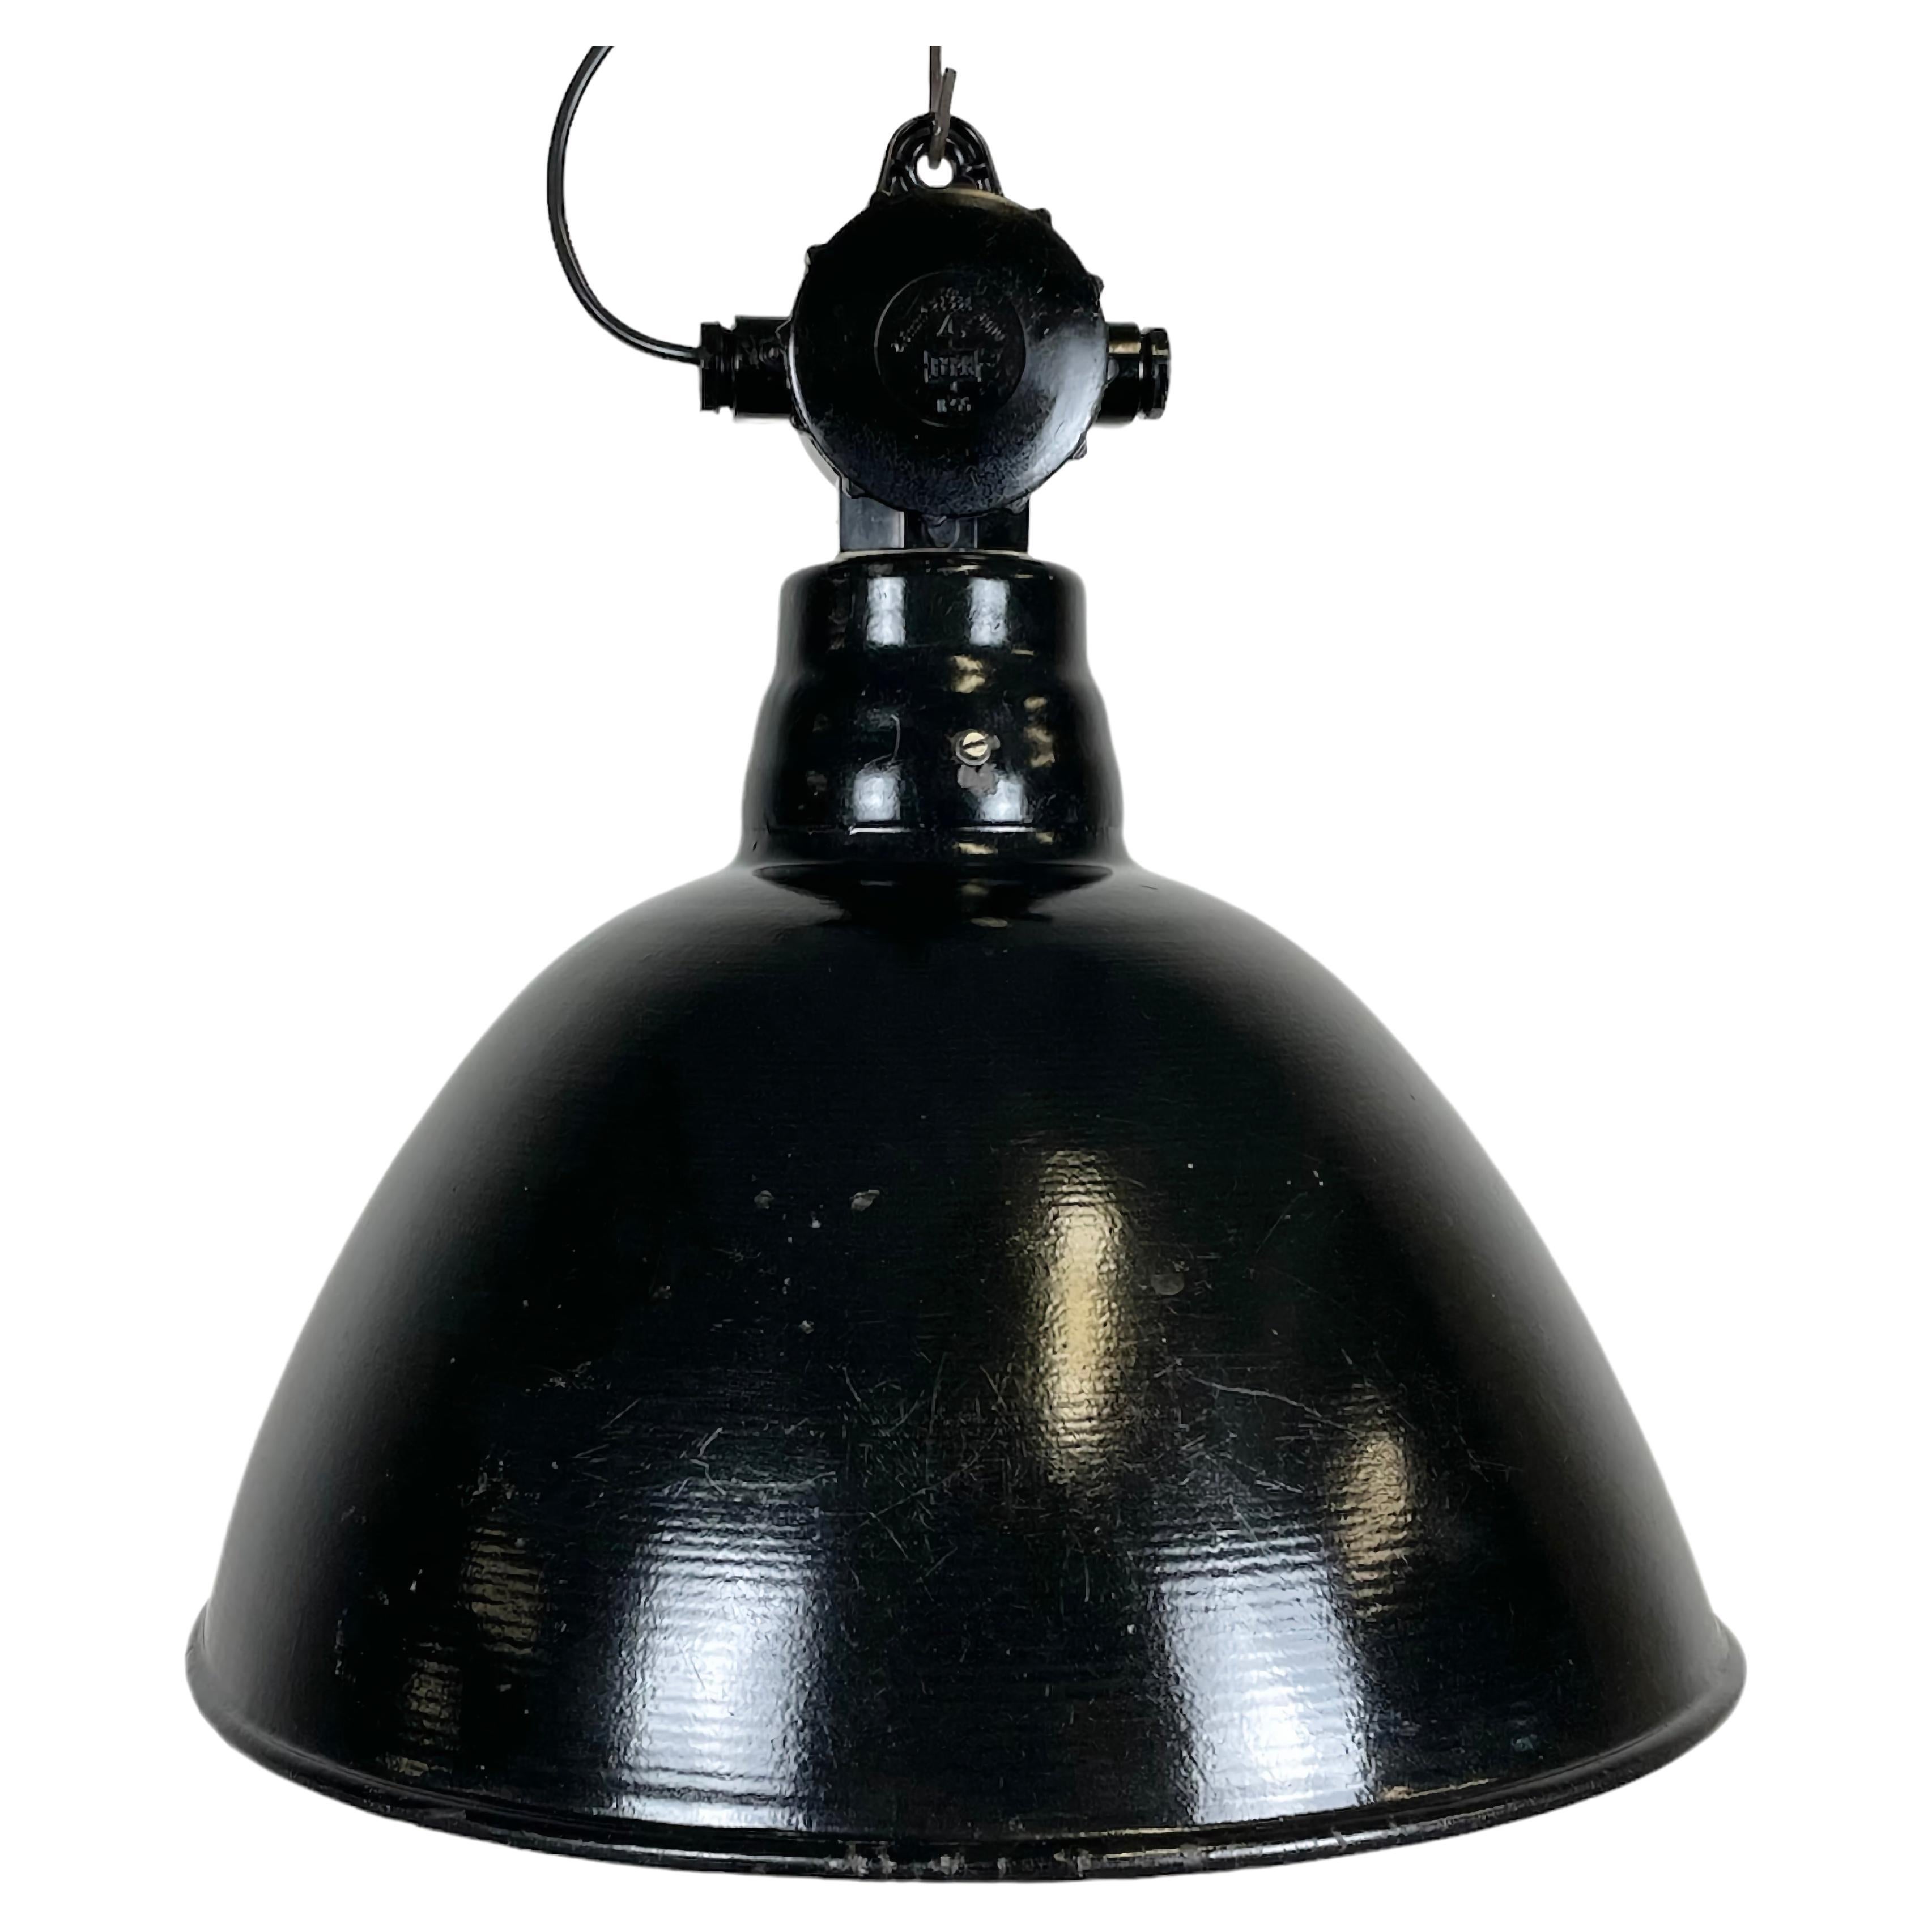 Lampe d'usine d'Allemagne de l'Est en émail noir par Lbd Veb Leuchtenbau Dresde, années 1950